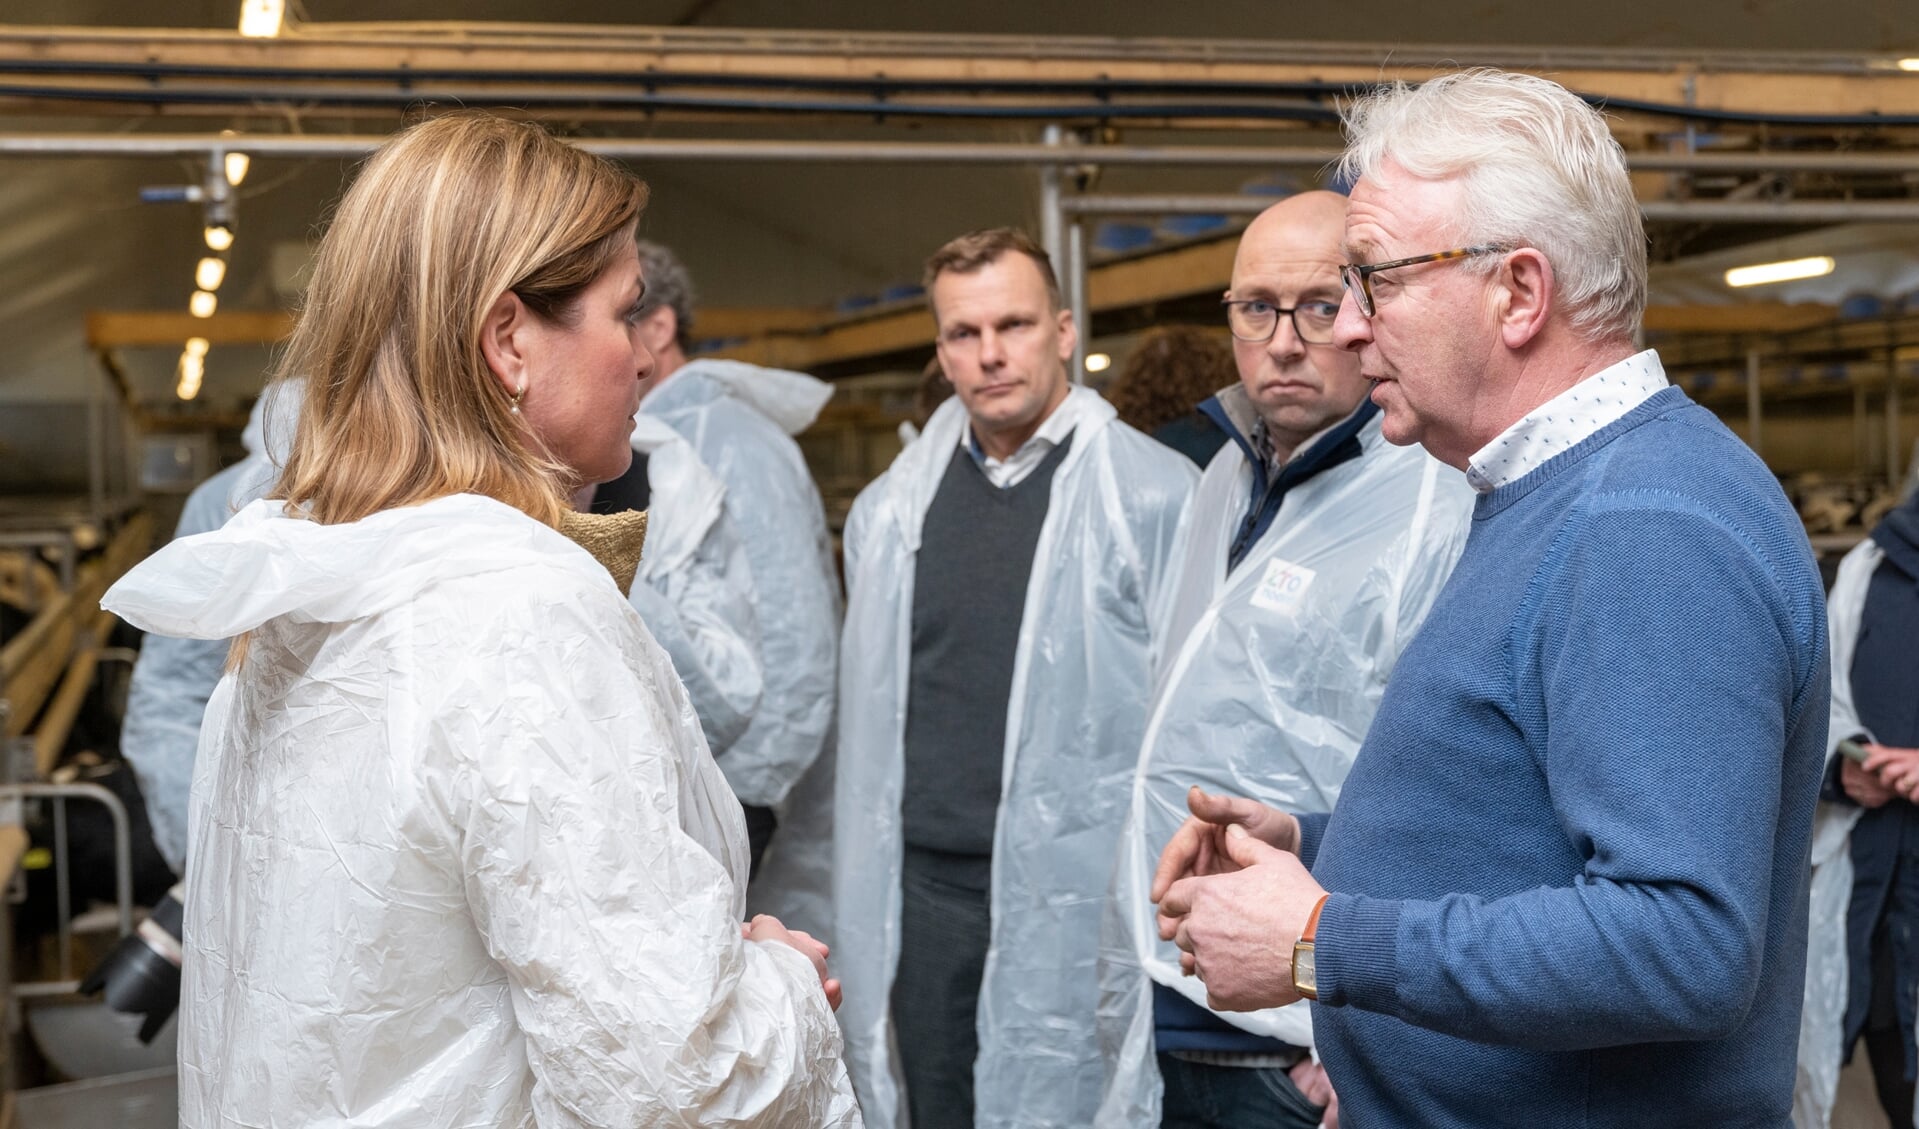 Stikstofminister Christianne van der Wal in gesprek met kalverhouder Jaap Kok uit Lunteren.